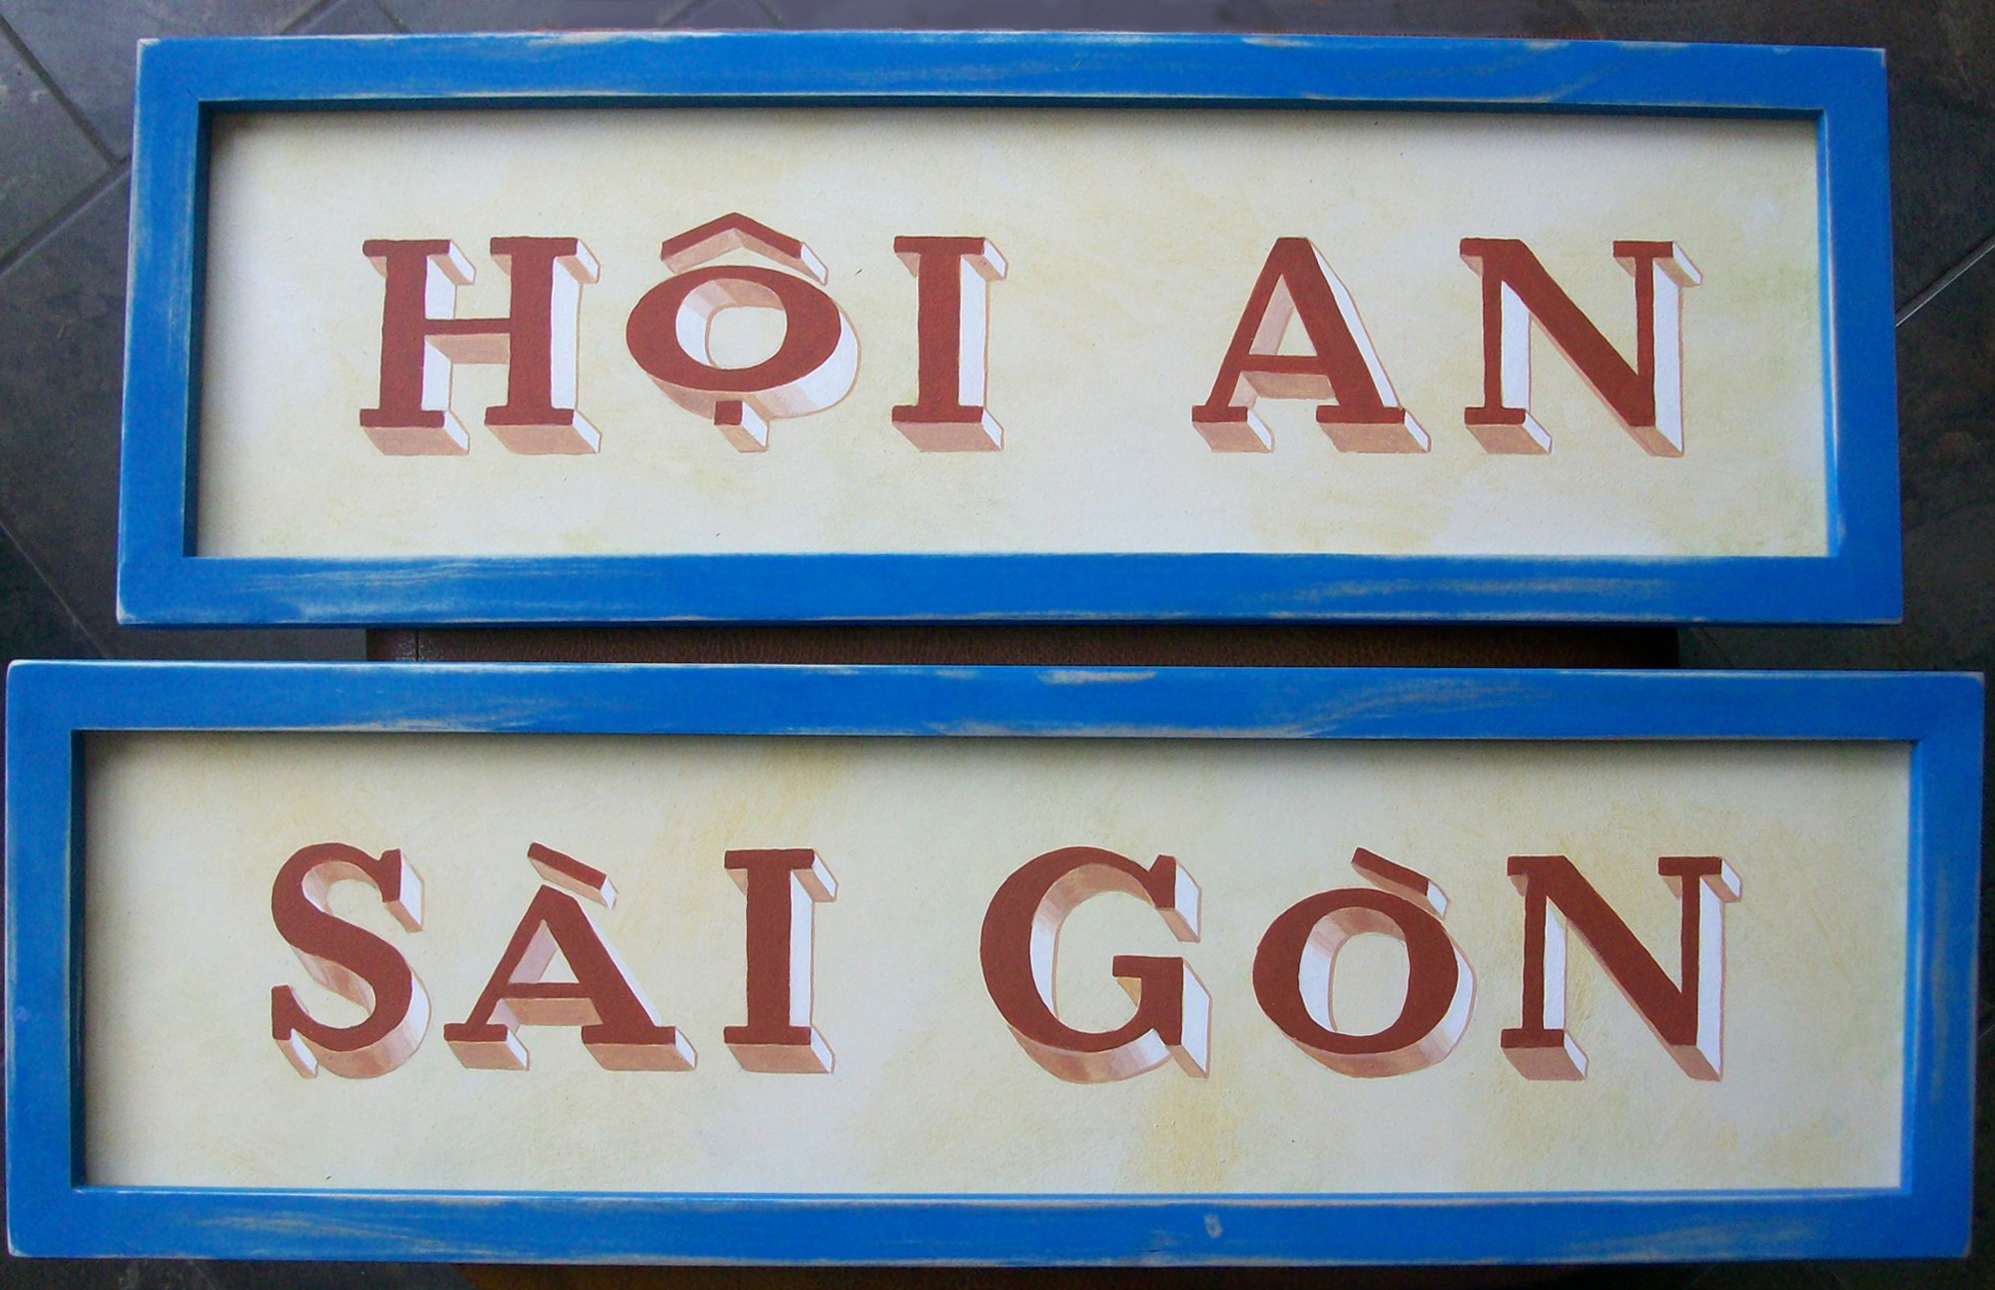 1Viet Hoian Saigon.jpg